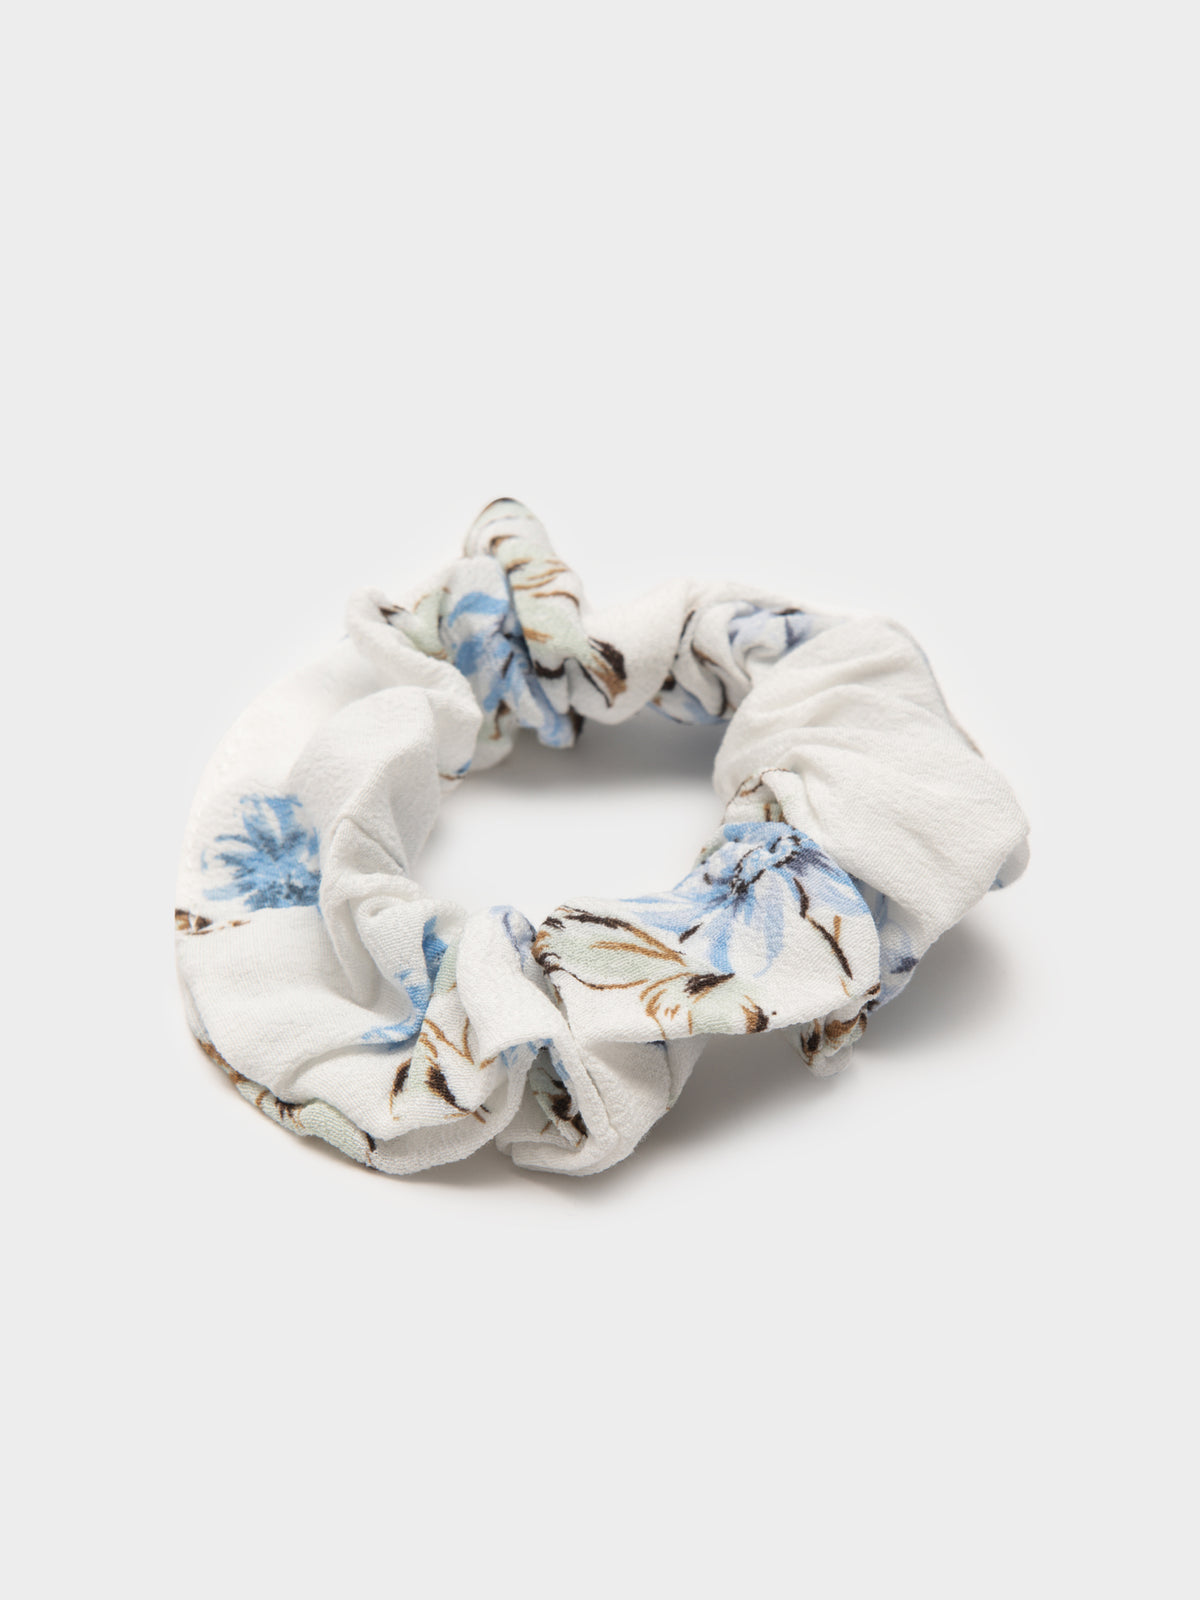 Verona Scrunchie in White and Blue